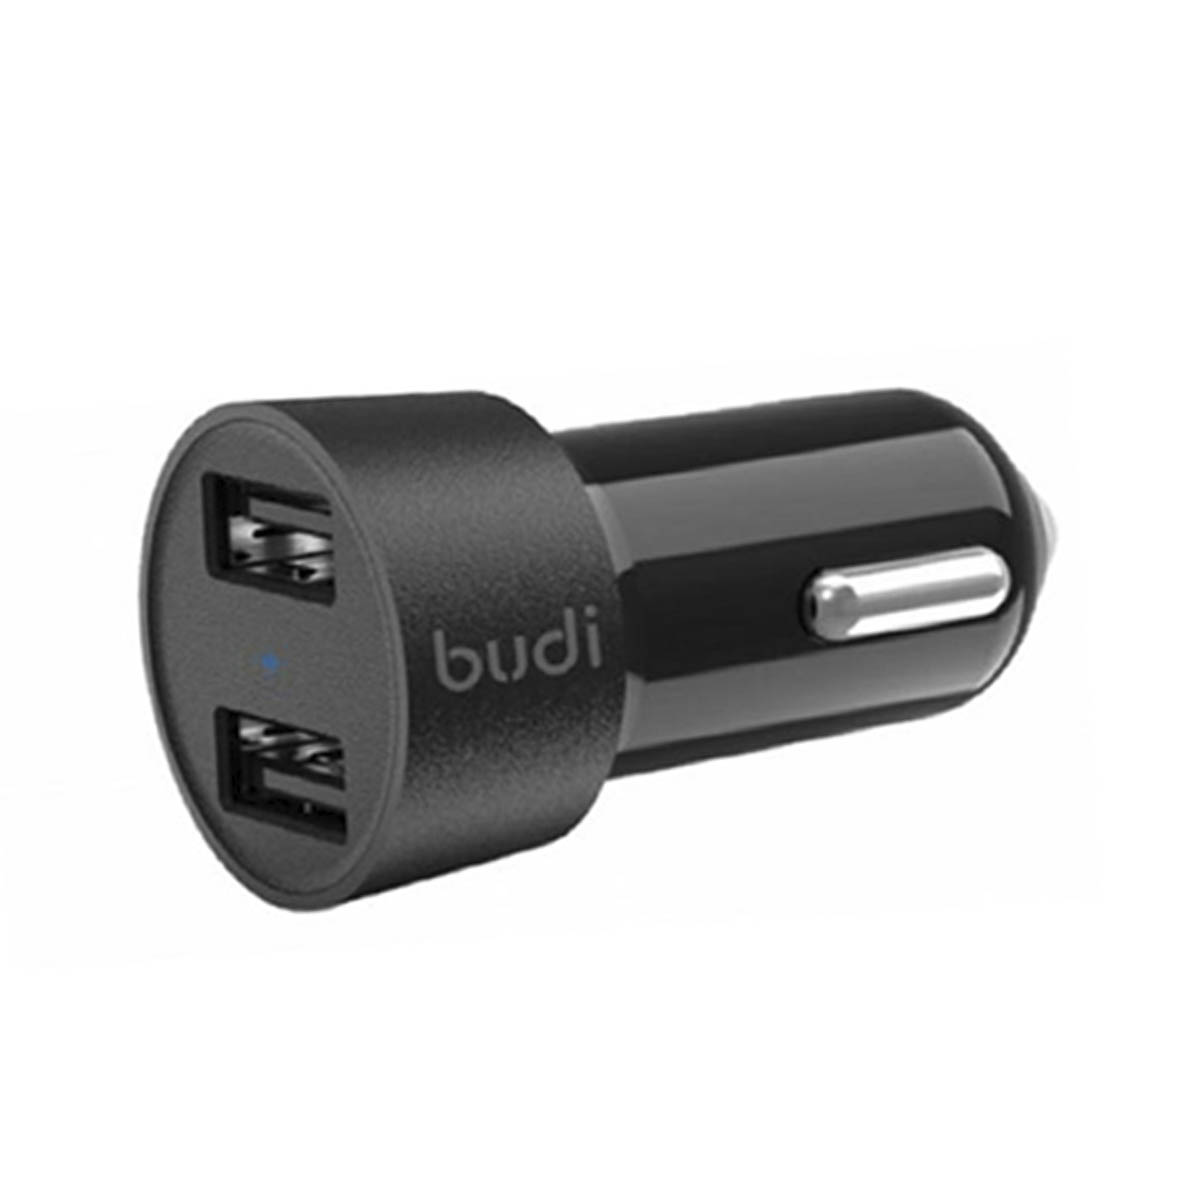 АЗУ (Автомобильное зарядное устройство) BUDI CC622BS, 3.4A, 2 USB, 17W, цвет черный